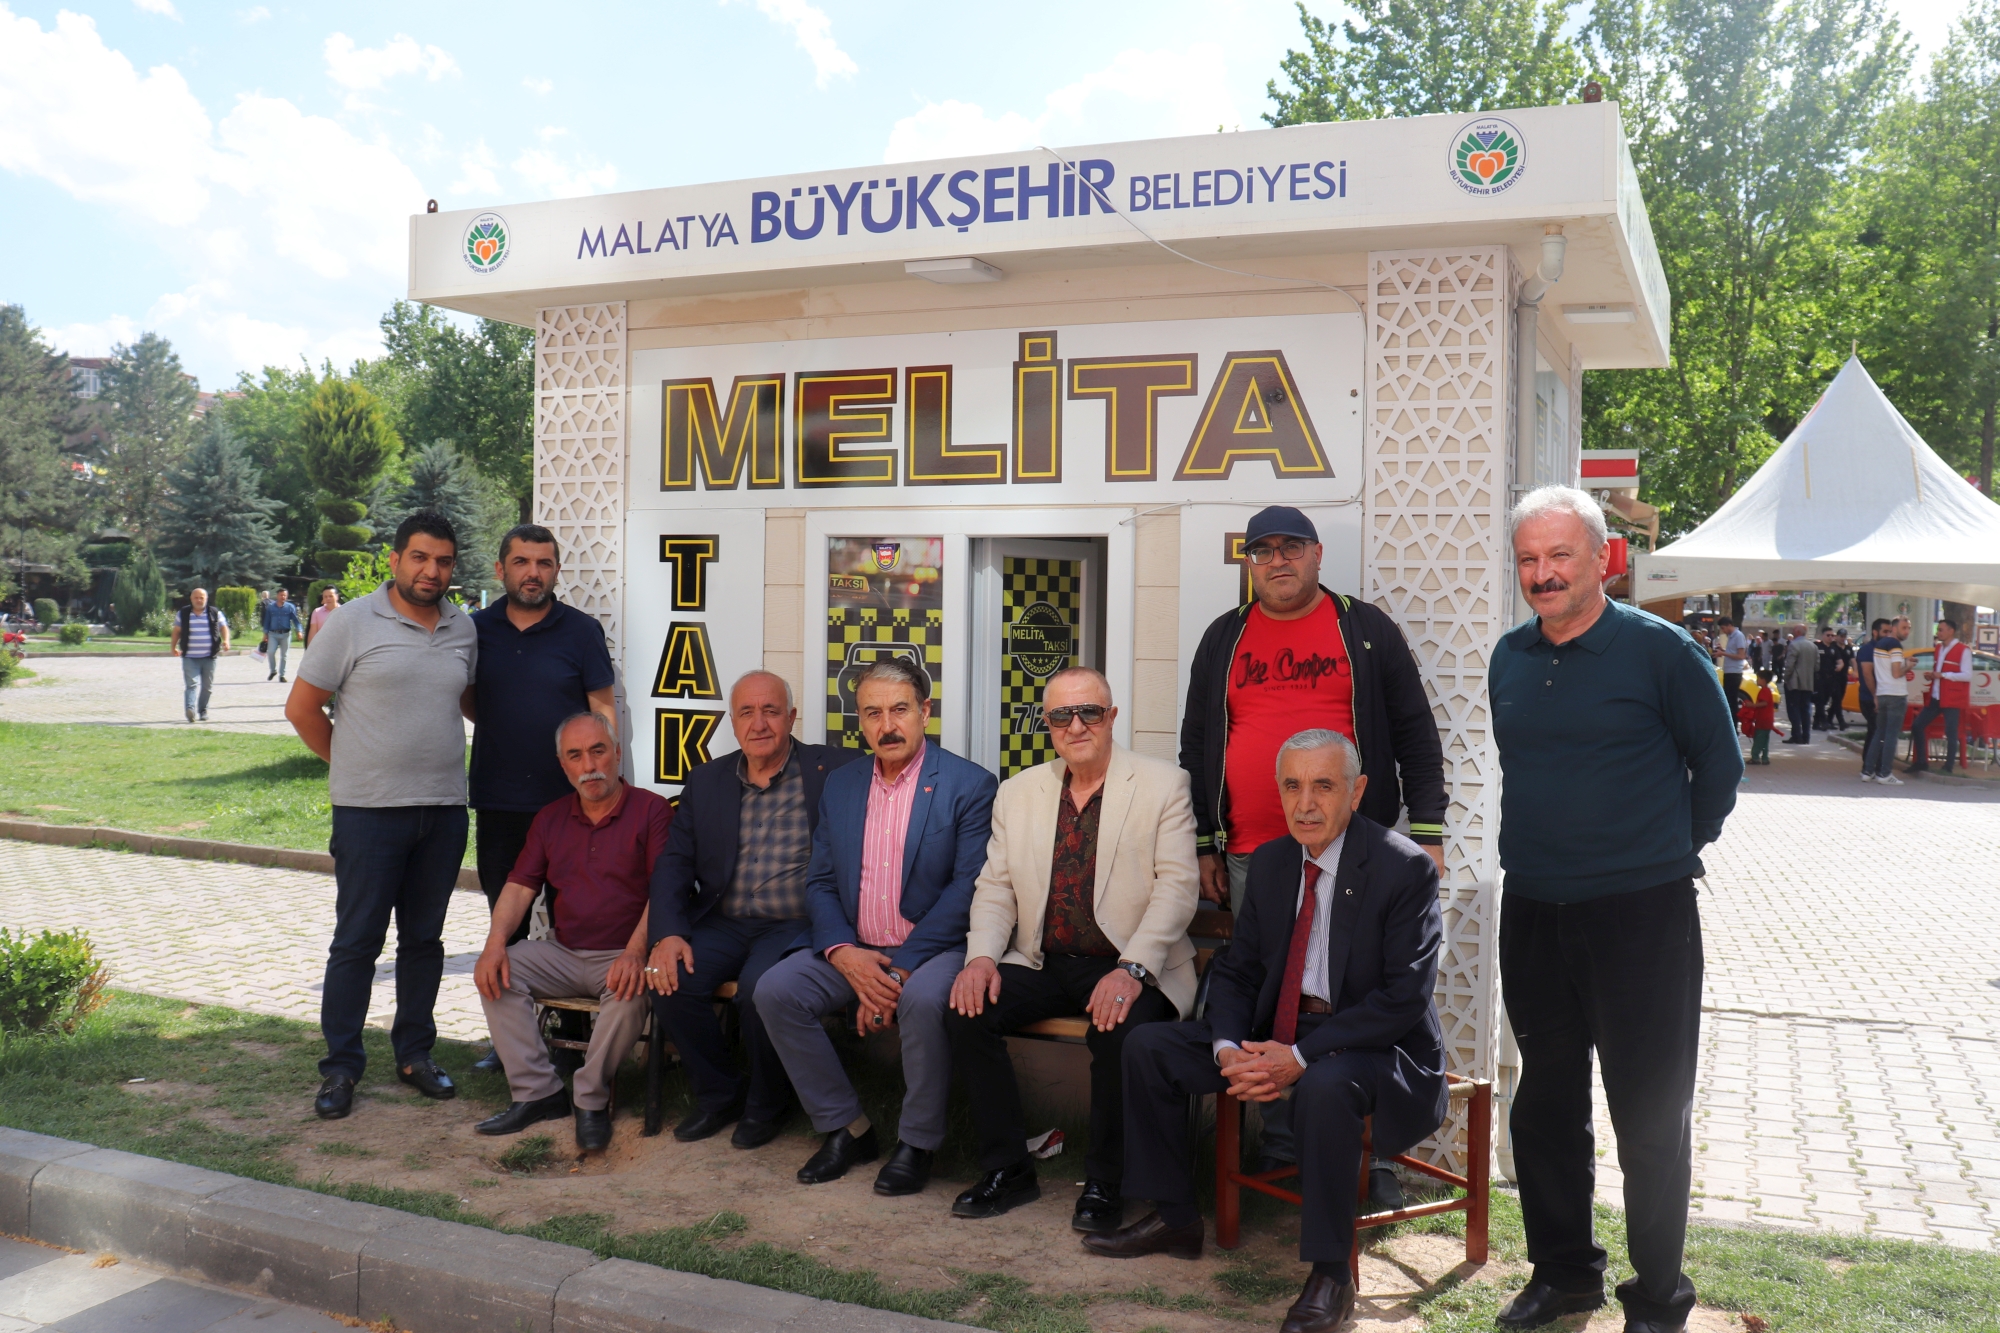 Malatya Esnaf ve Sanatkarlar Odaları Birliği Başkanı ve TESK Yönetim Kurulu Üyesi Şevket Keskin, beraberinde Türkiye Esnaf ve Sanatkarlar Konfederasyonu (TESK) Başkan Vekili Burhan Aksak ile birlikte esnaf ziyaretinde bulundu.